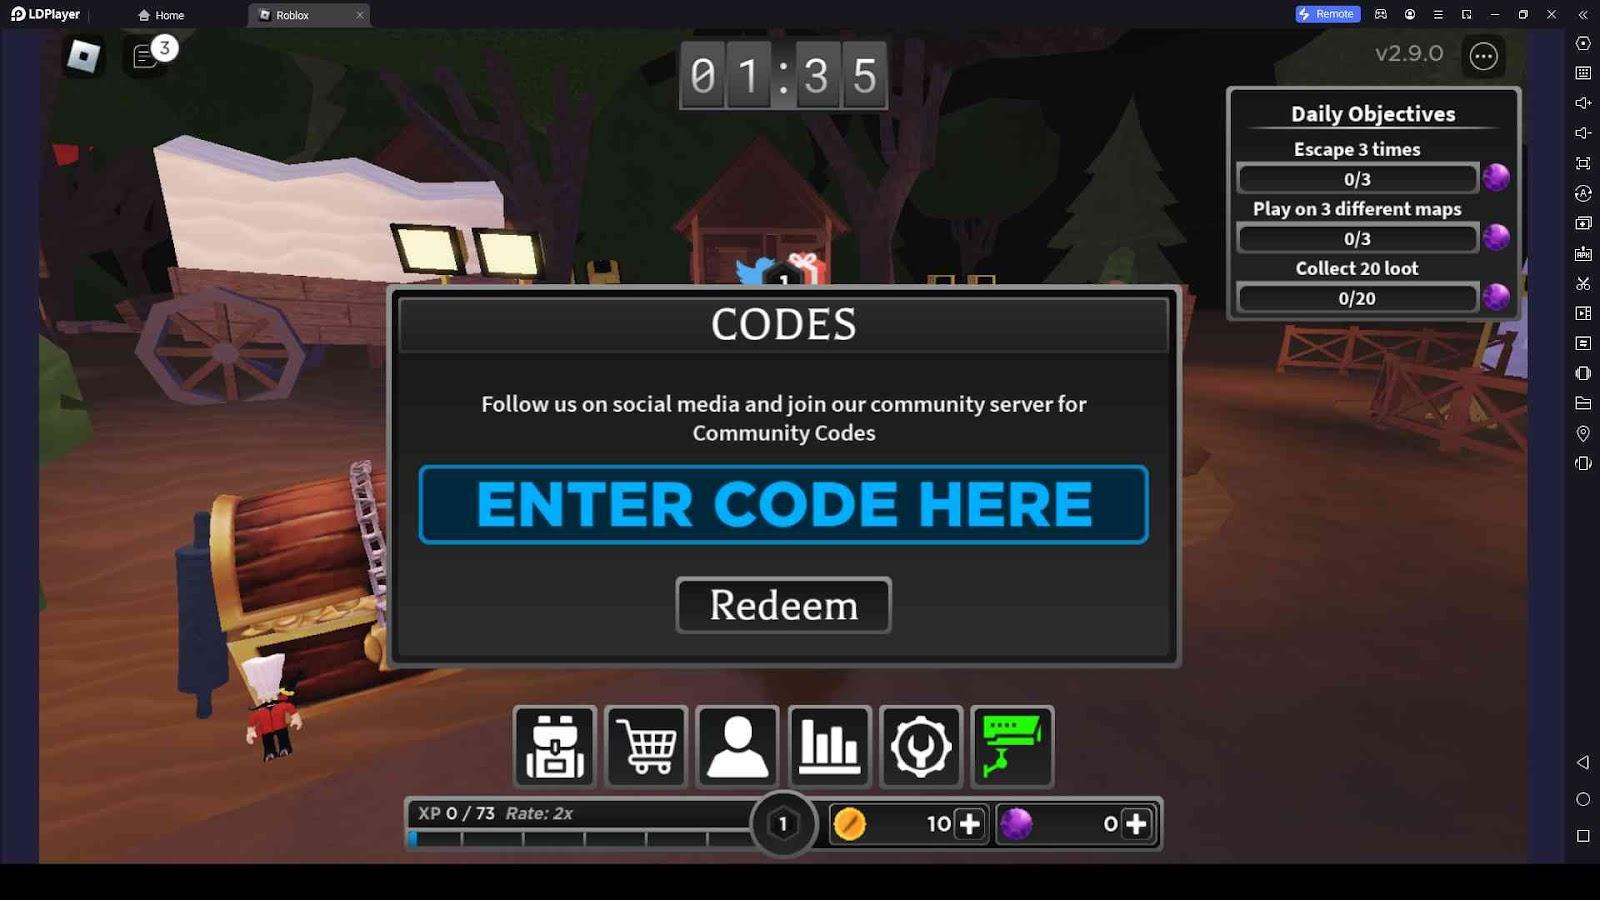 Roblox - Aqueles que permanecem códigos (outubro de 2023) - Listas Steam